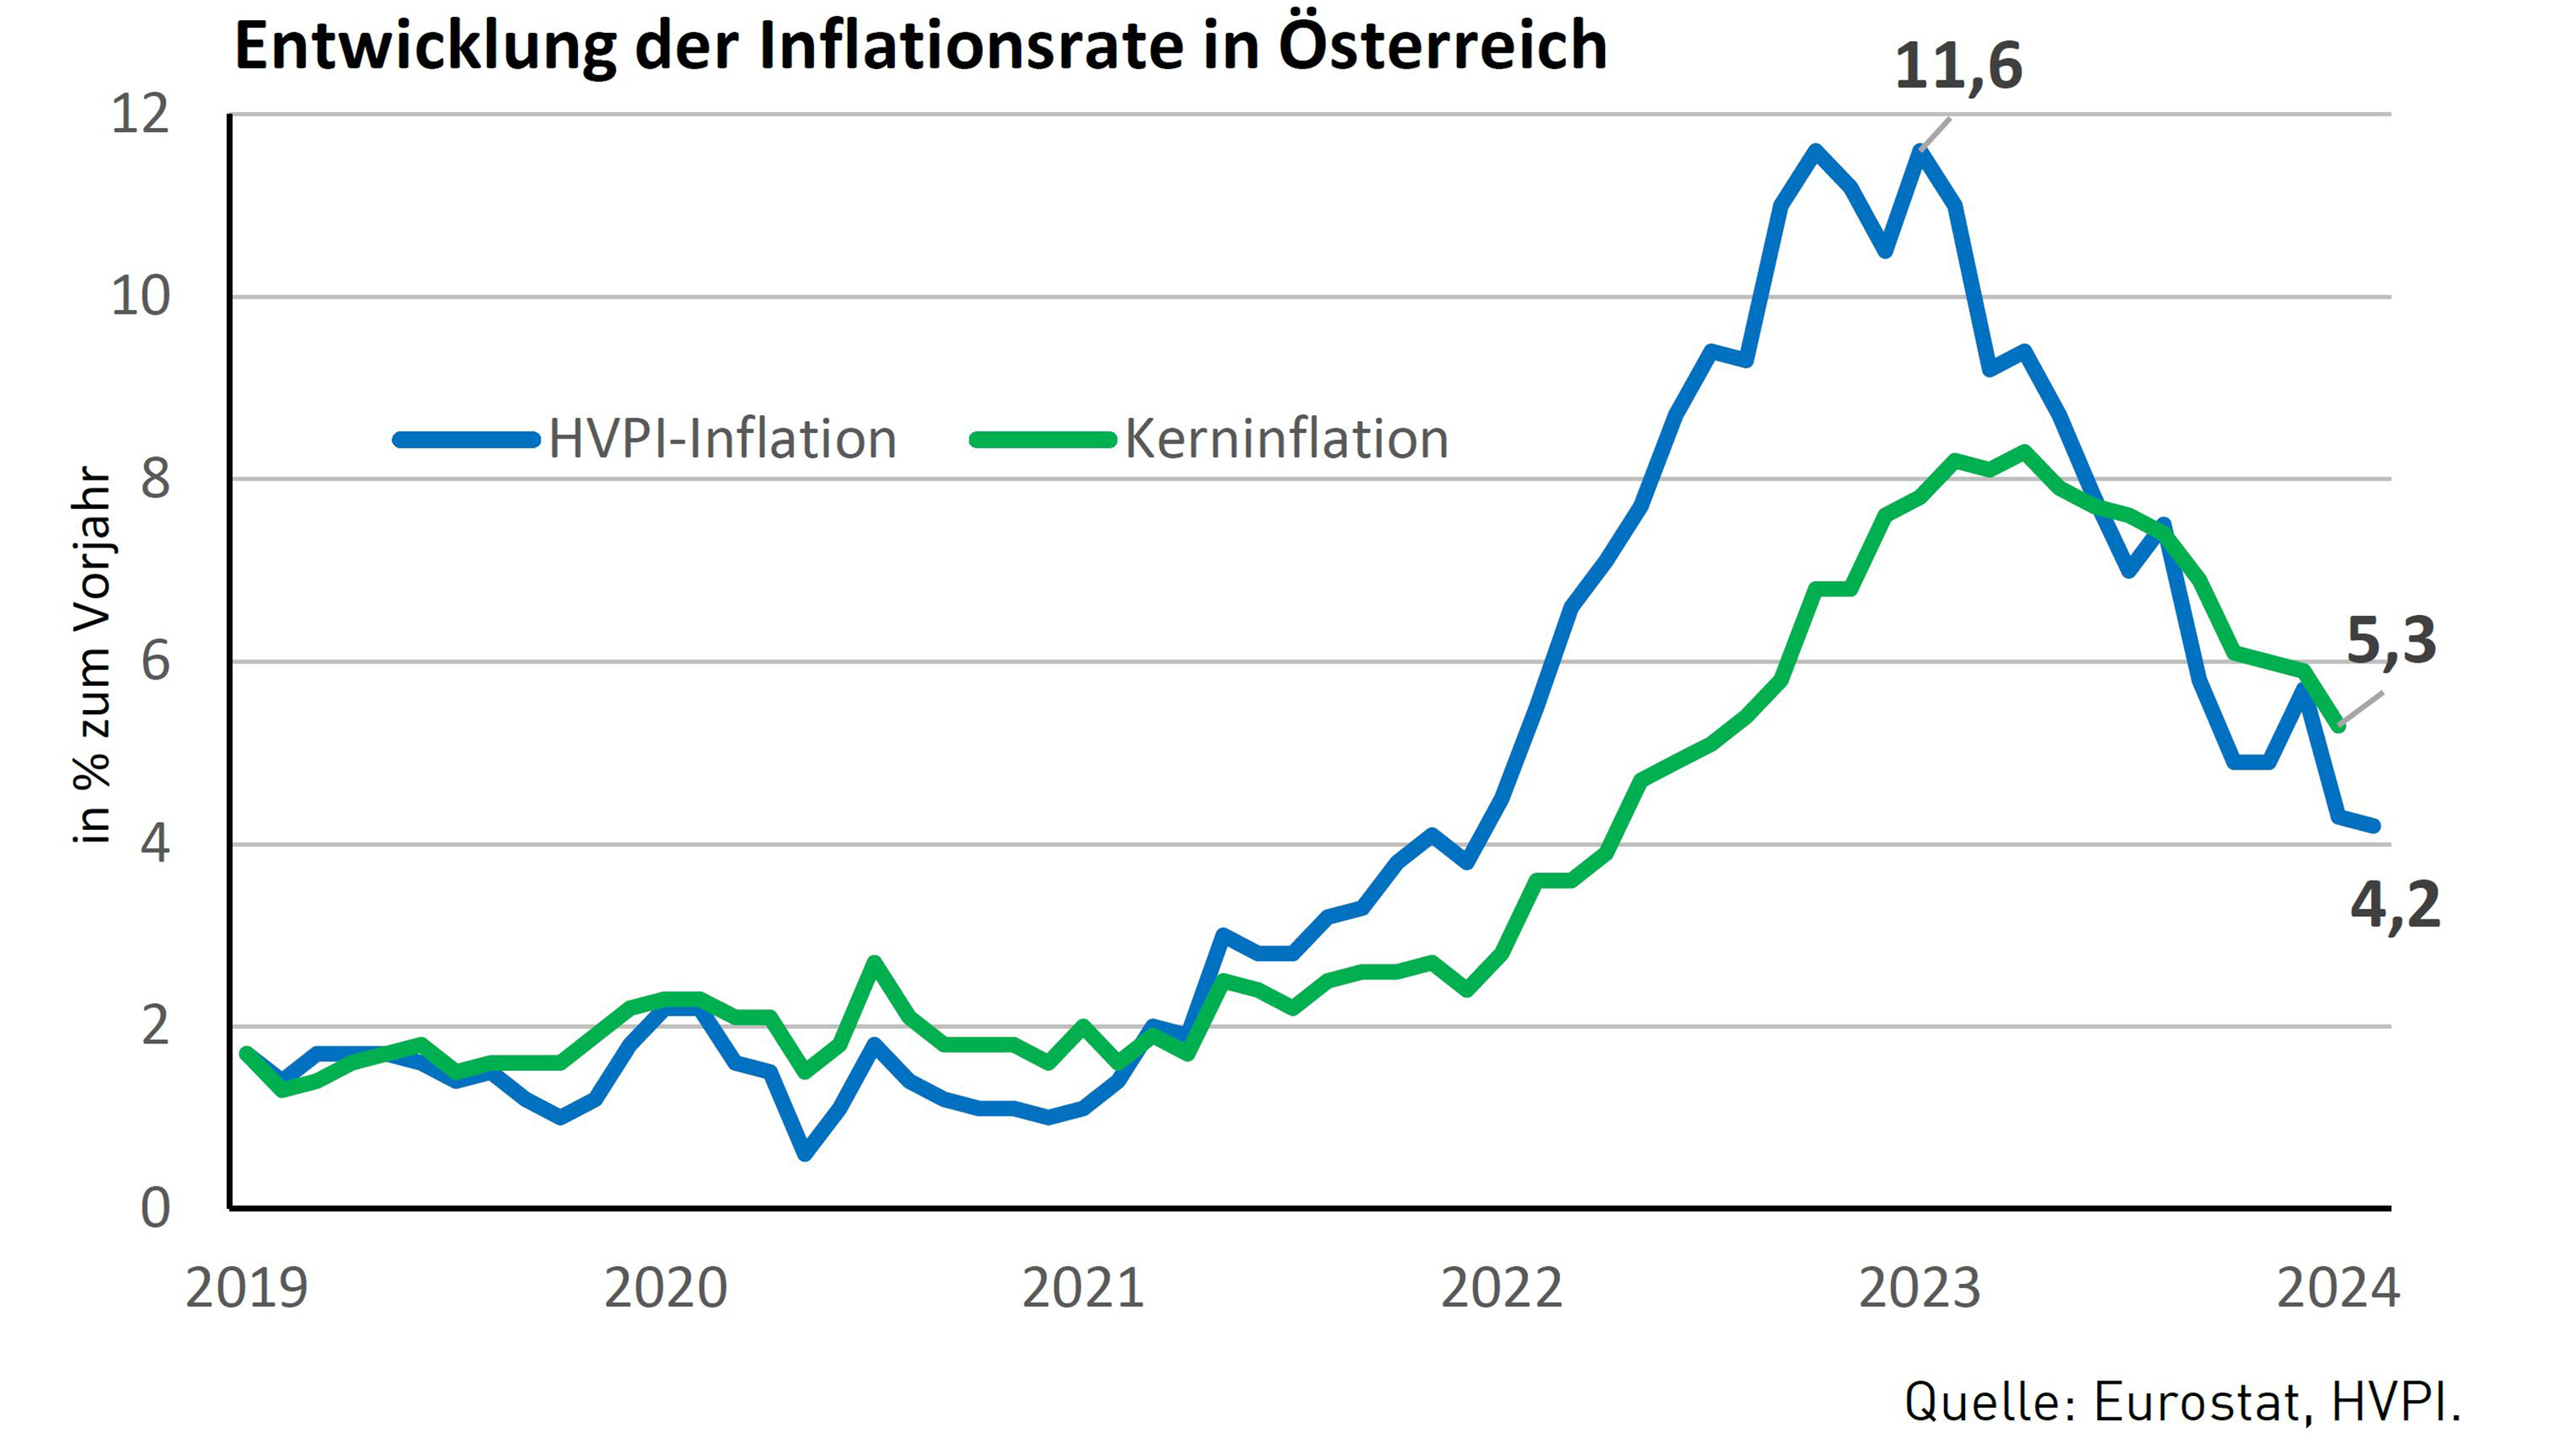 Liniendiagramm zur Entwicklung der Inflationsrate in Österreich in den Jahren 2019-2024 mit Höhepunkt der HVPI-Inflation bei 11,6 % 2023